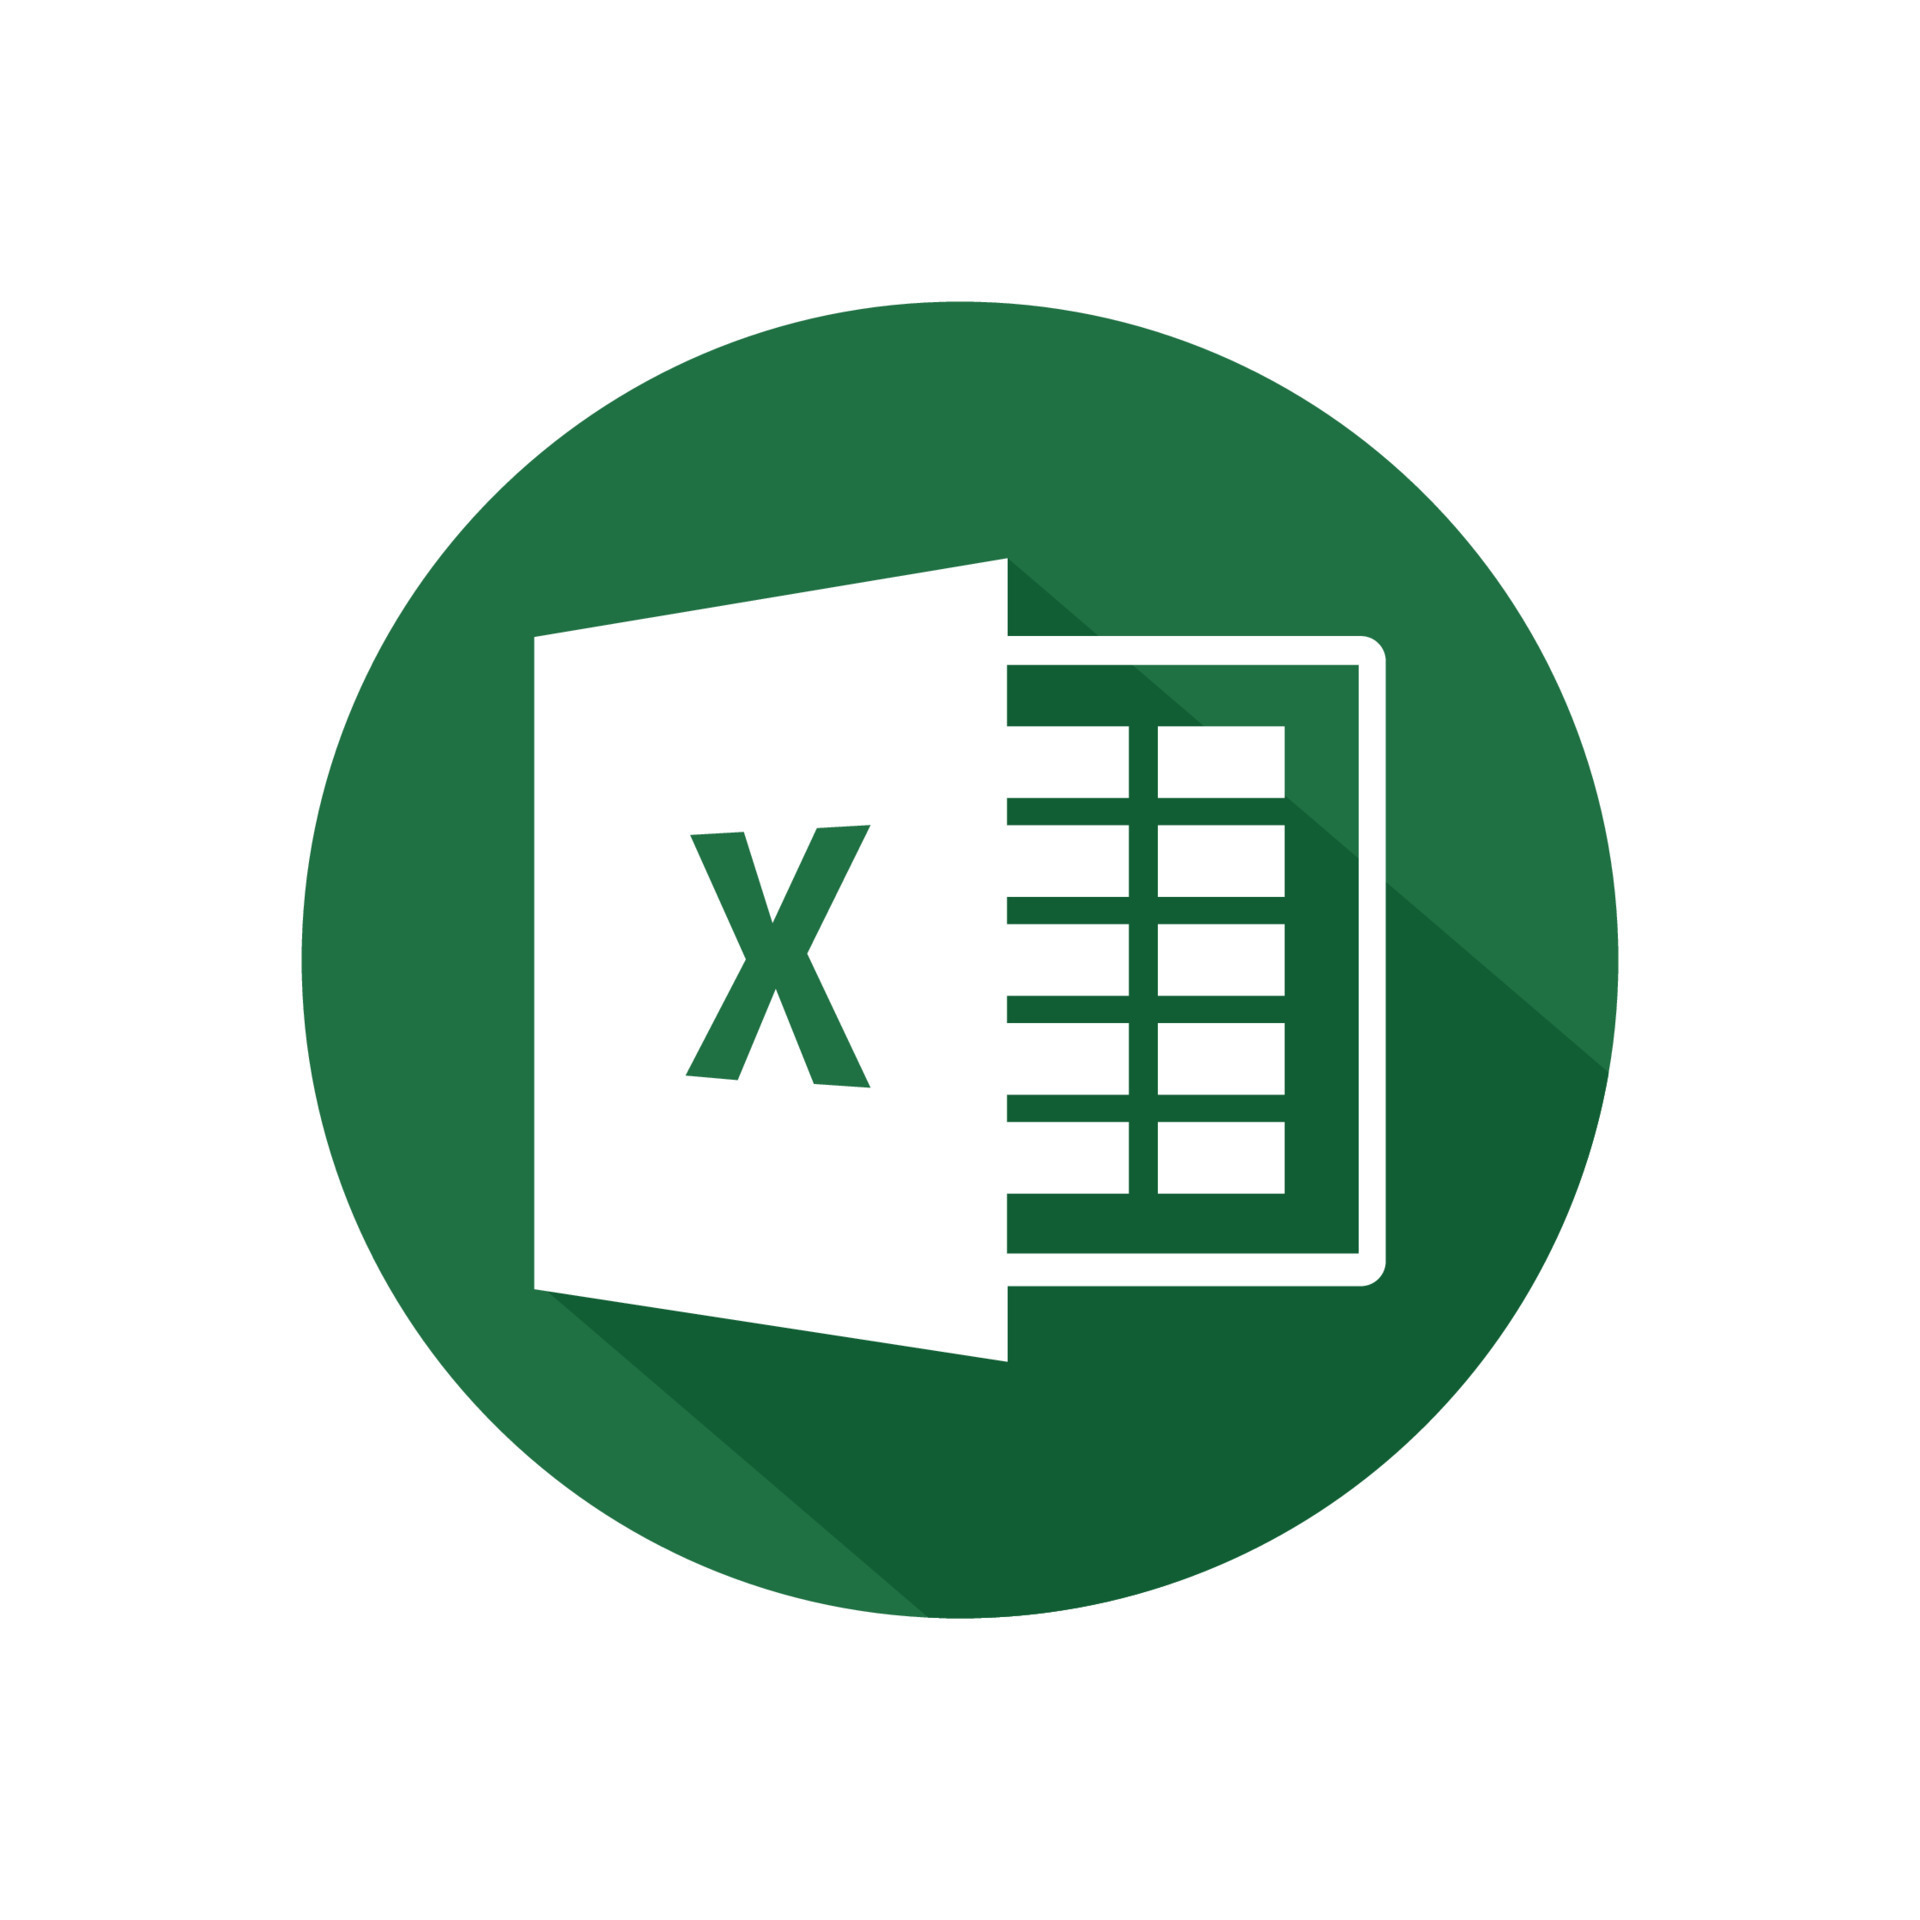 Microsoft Excel logo icon vector Free Download 19550641 Vector Art ...